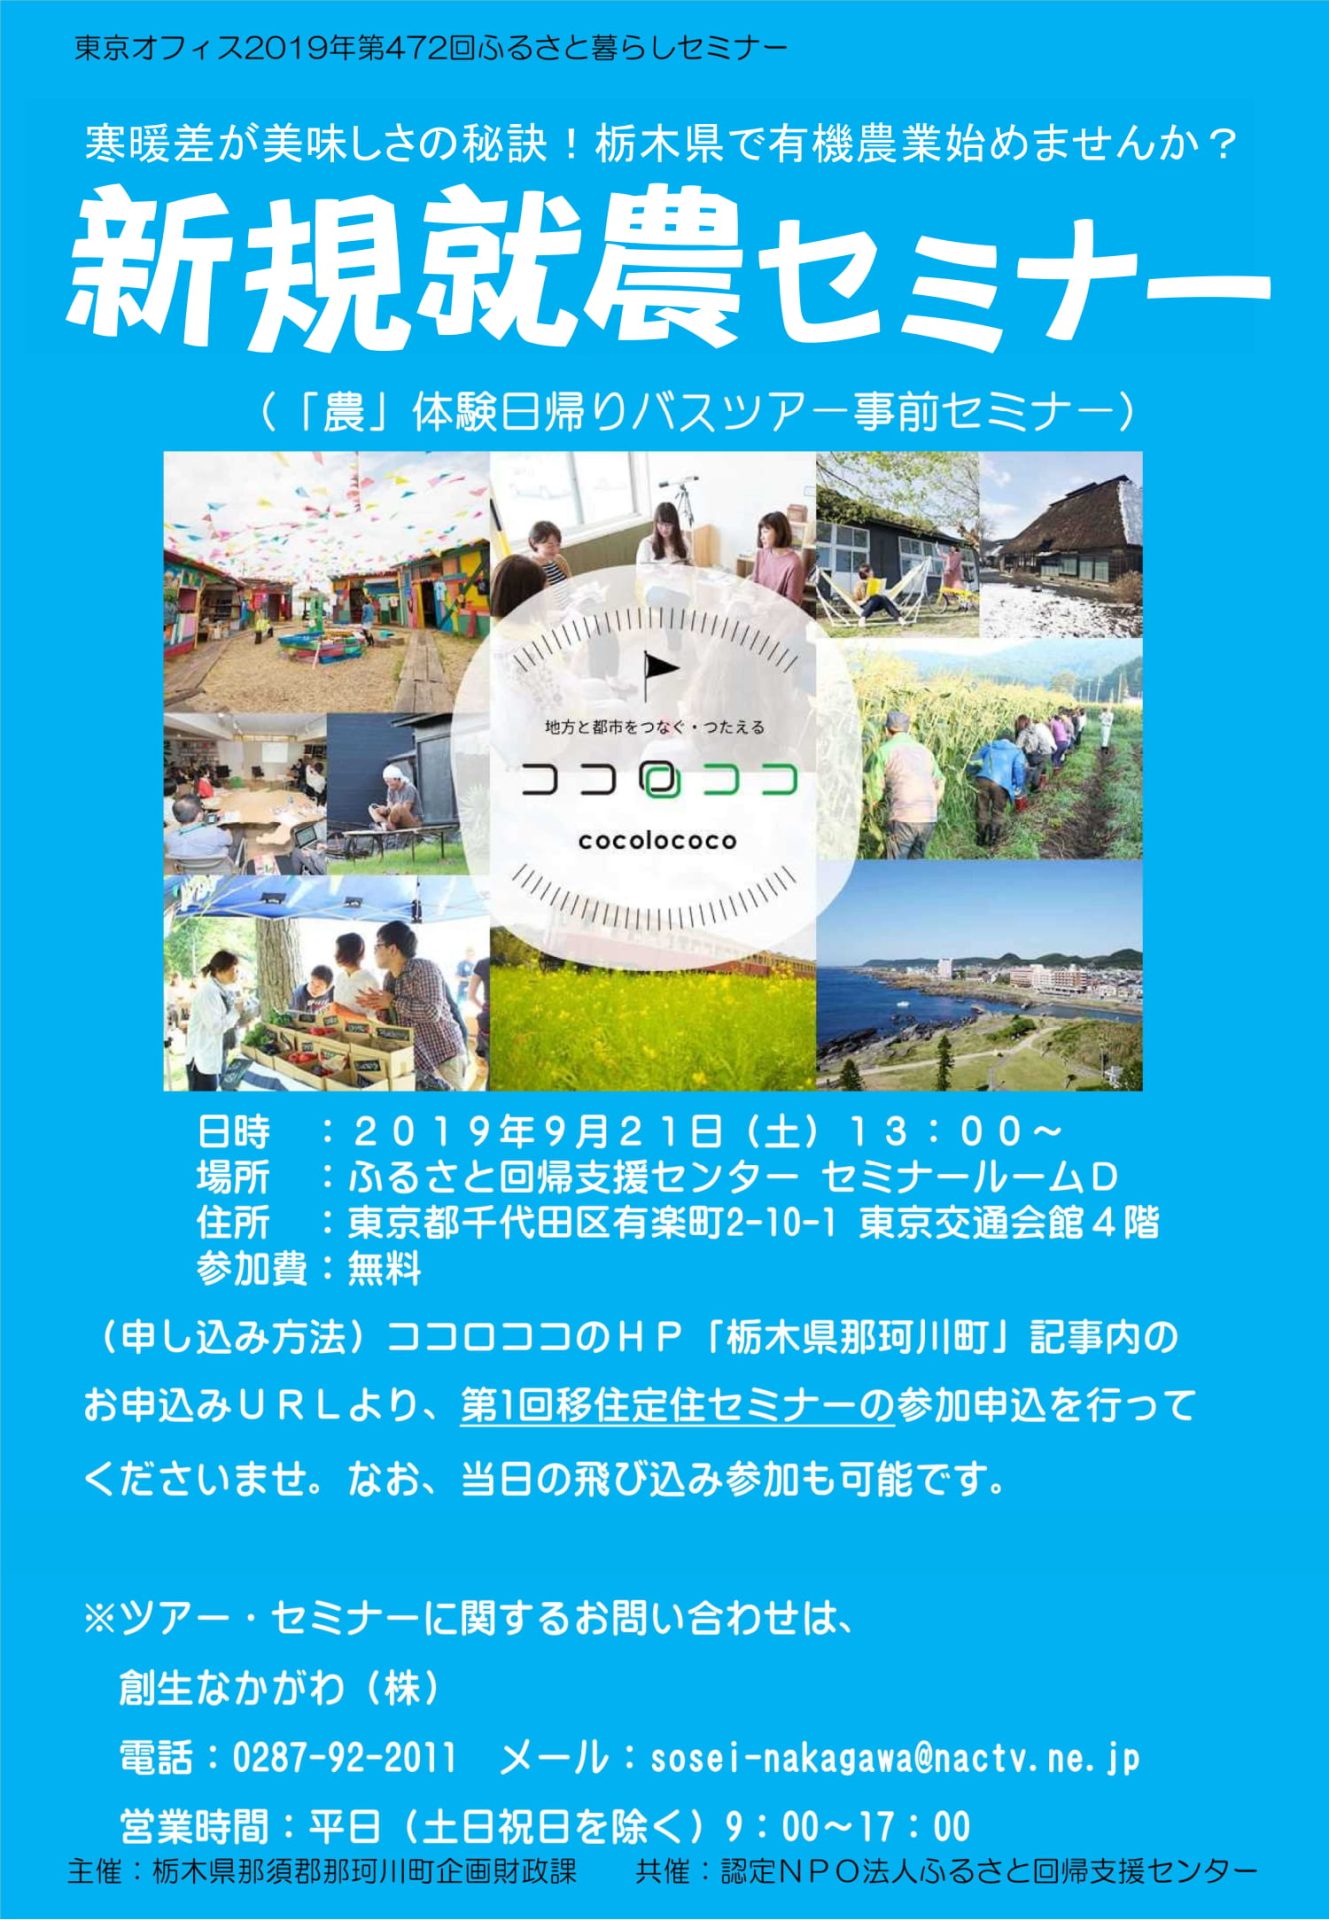 寒暖差が美味しさの秘訣！栃木県で有機農業始めませんか？新規就農セミナー | 移住関連イベント情報